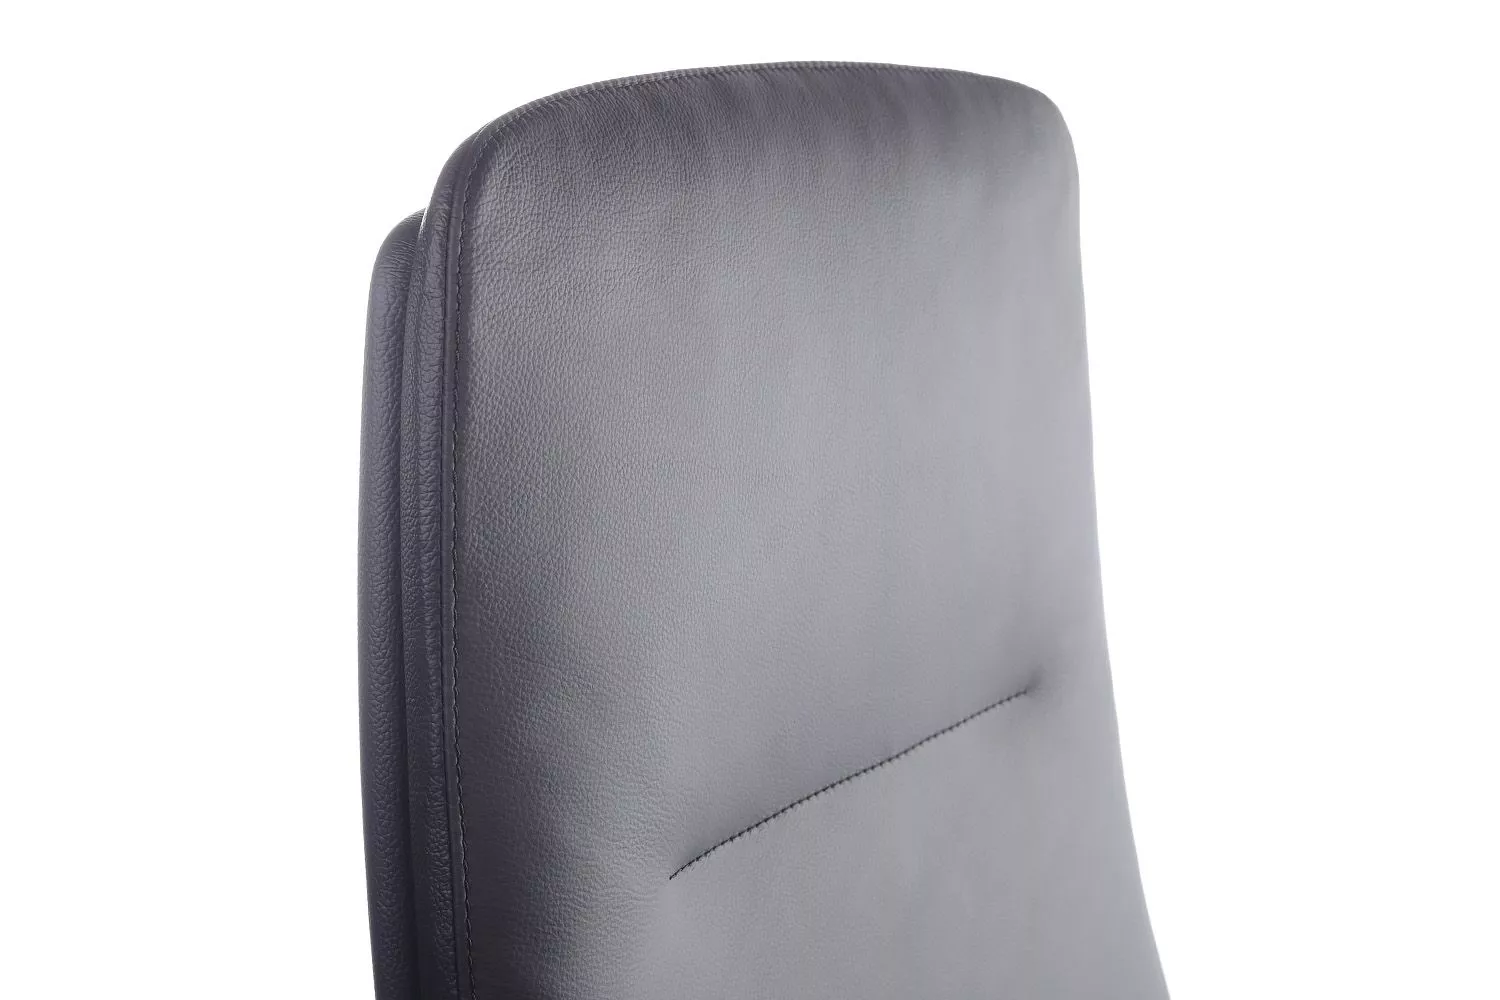 Кресло RIVA DESIGN Plaza (FK004-A13) черный